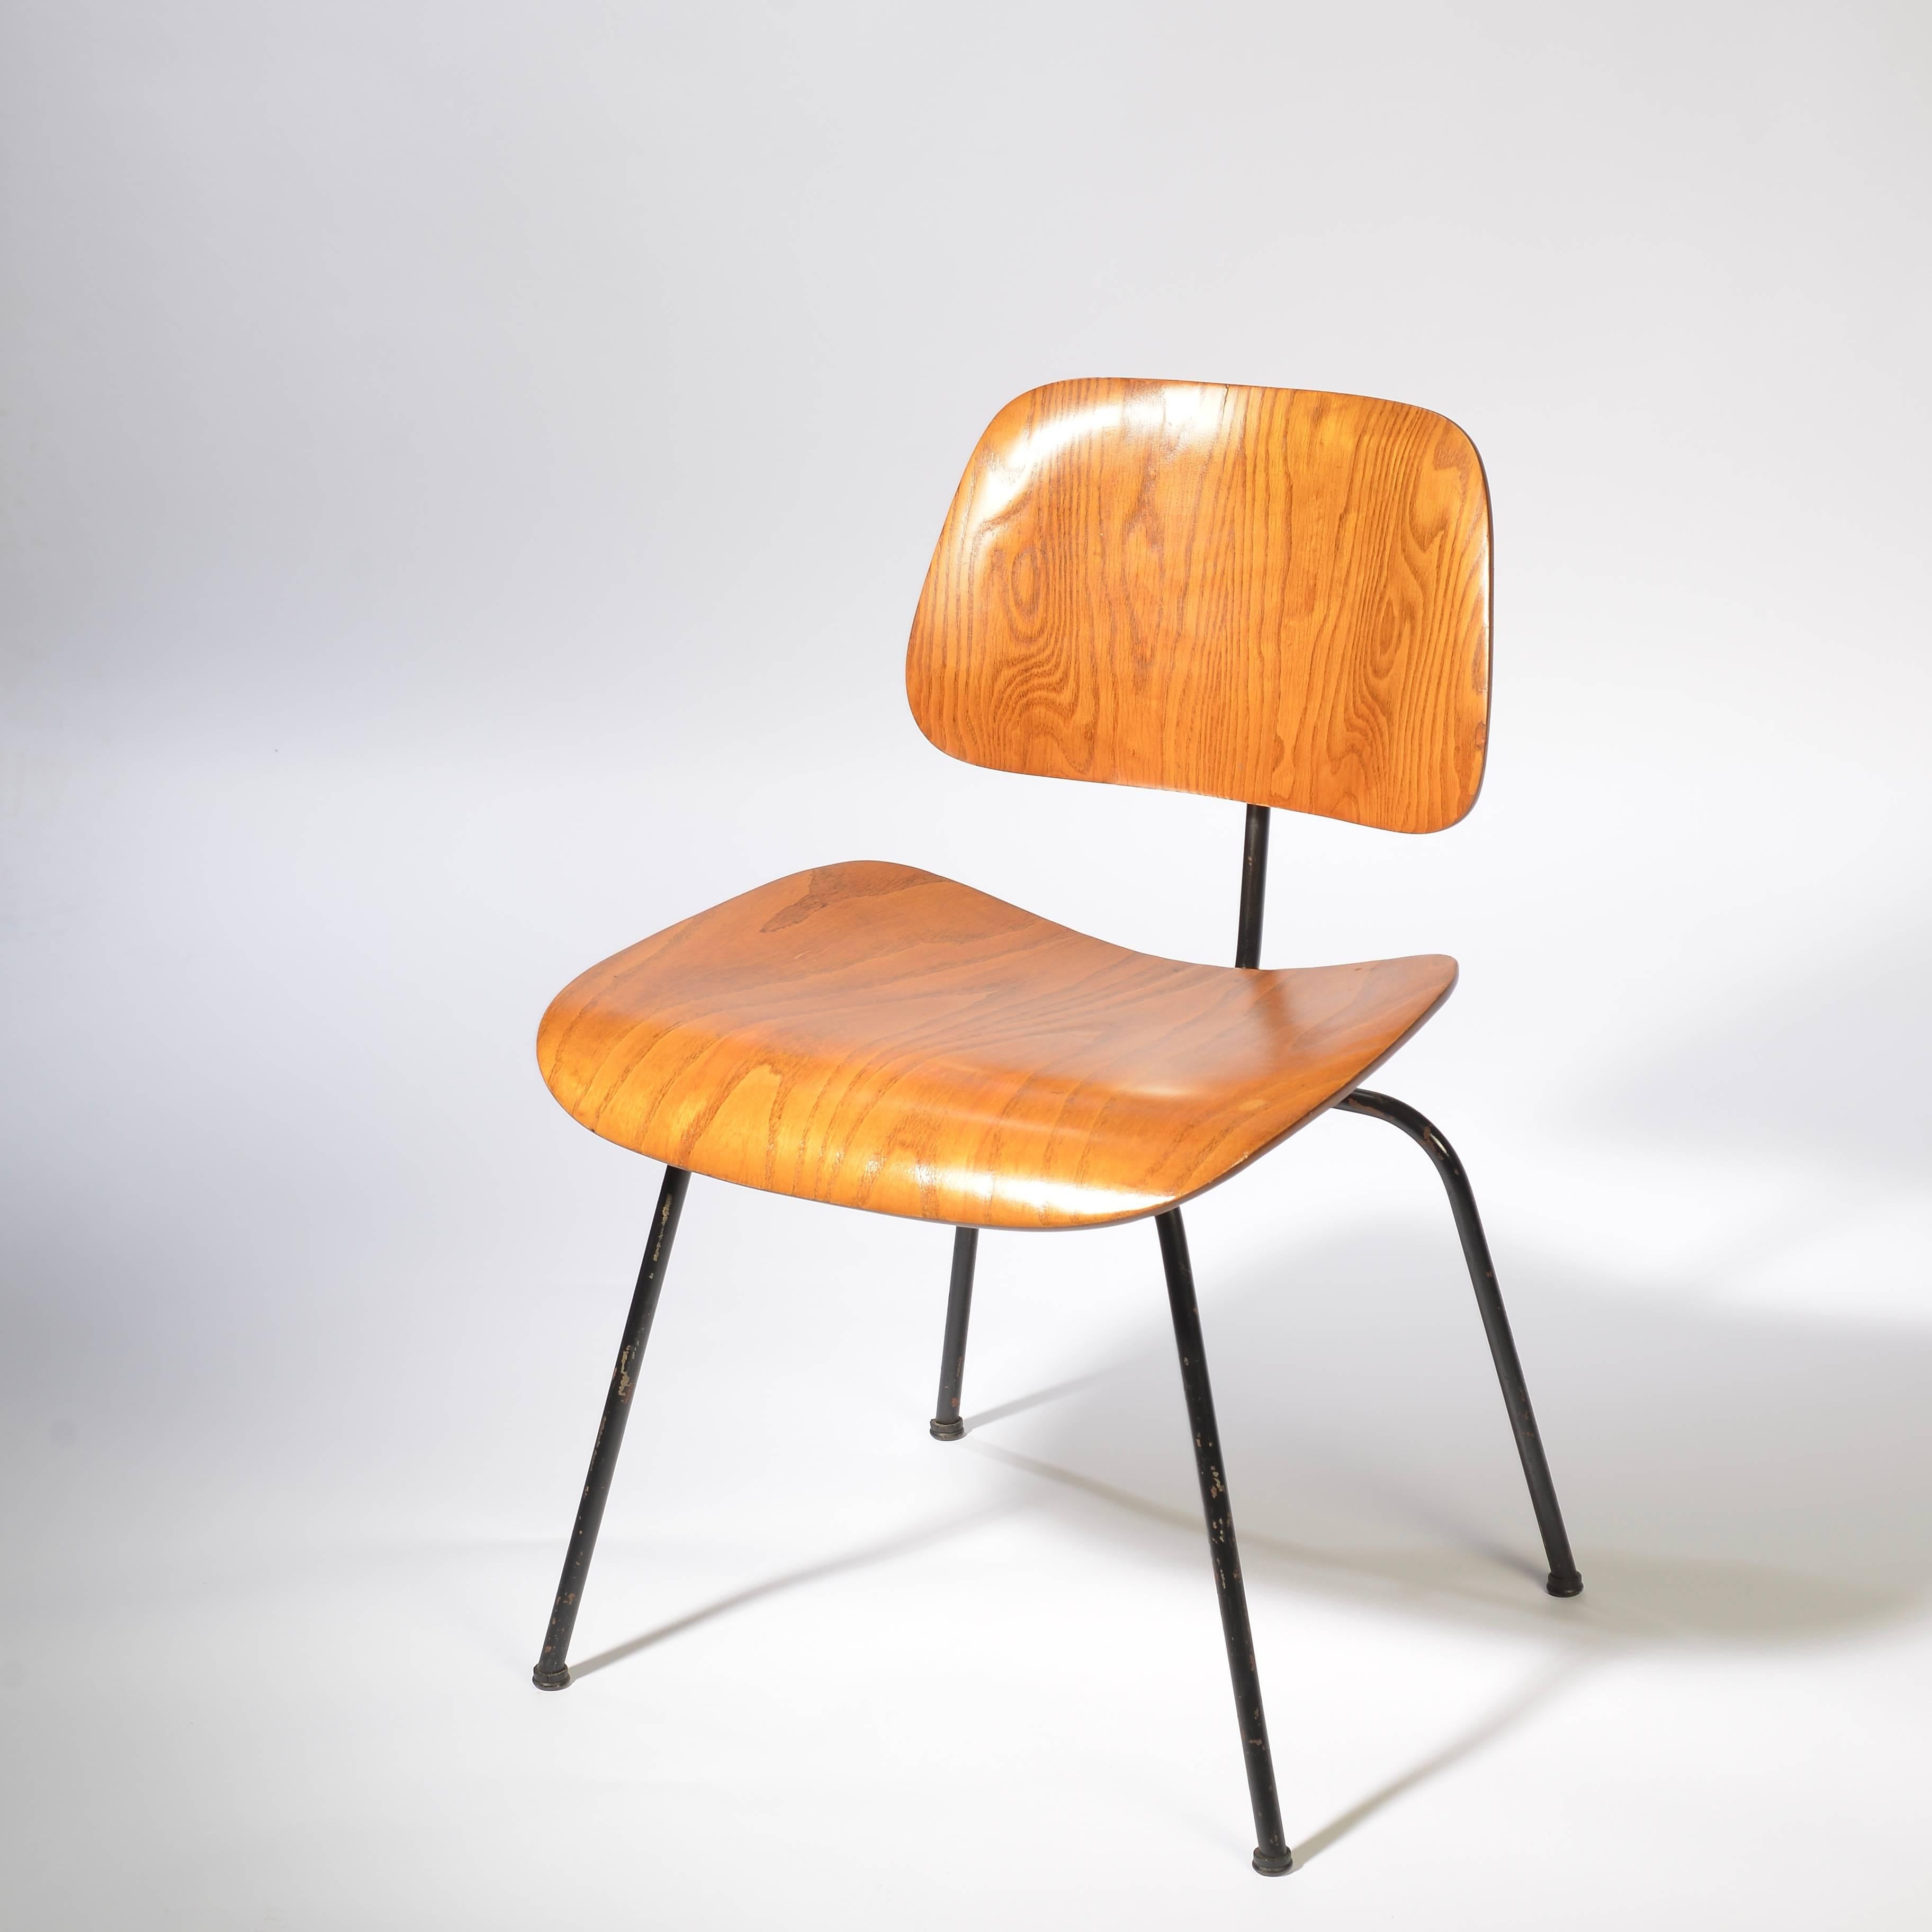 Früher Charles Eames für Herman Miller Company geformter Sperrholz-Esszimmerstuhl in Eiche mit wunderbarer Patina. Die Eichenversion ist sehr selten und wird nur ein Jahr lang produziert.
     